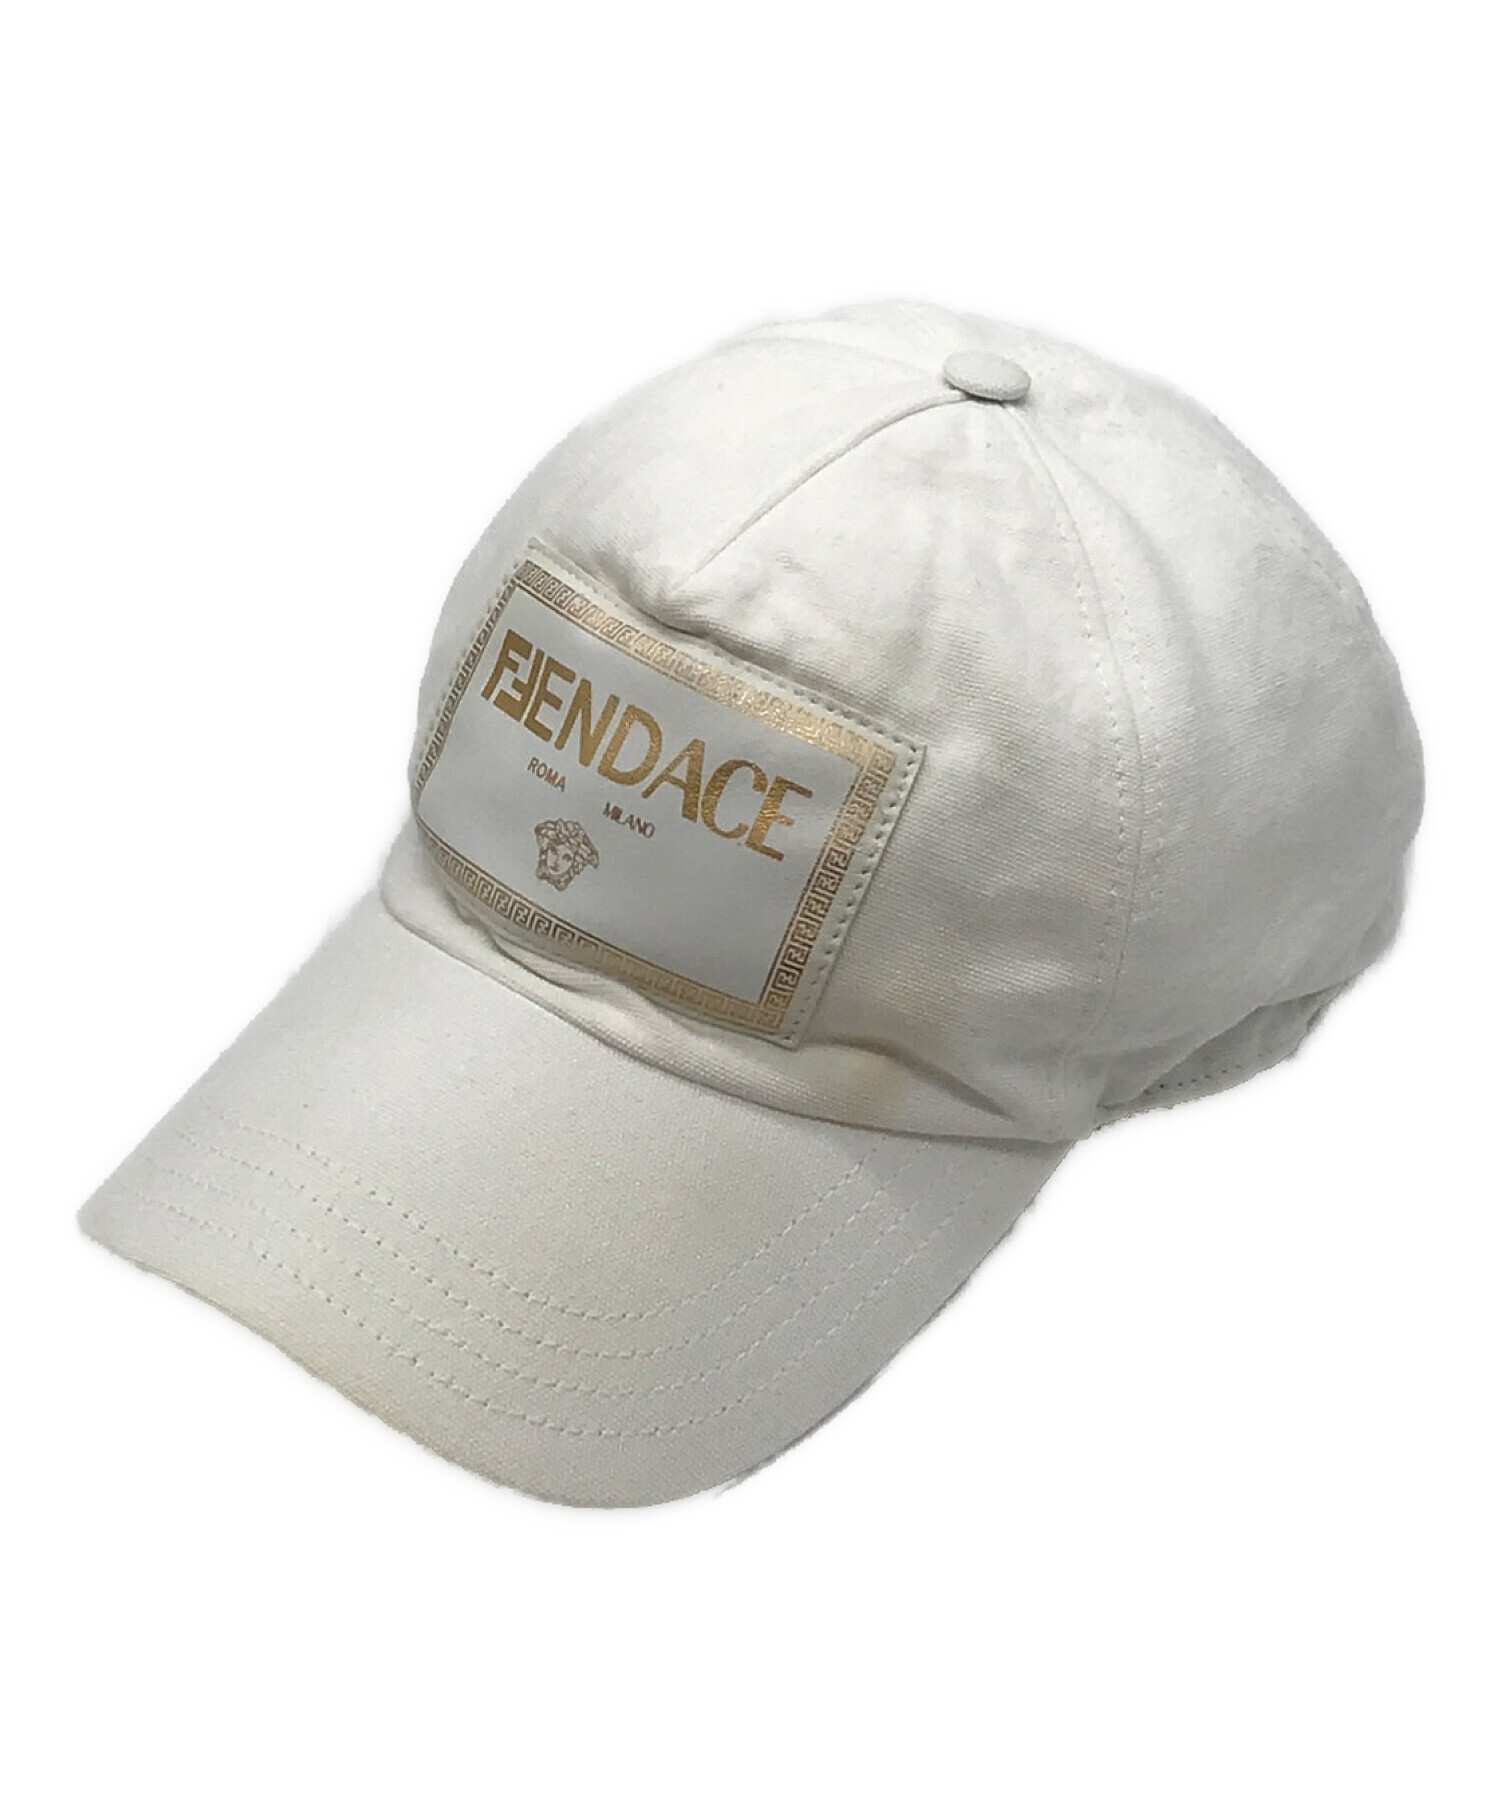 限定コラボ商品ですFENDACE キャップ ホワイト 白 ロゴキャップ 帽子